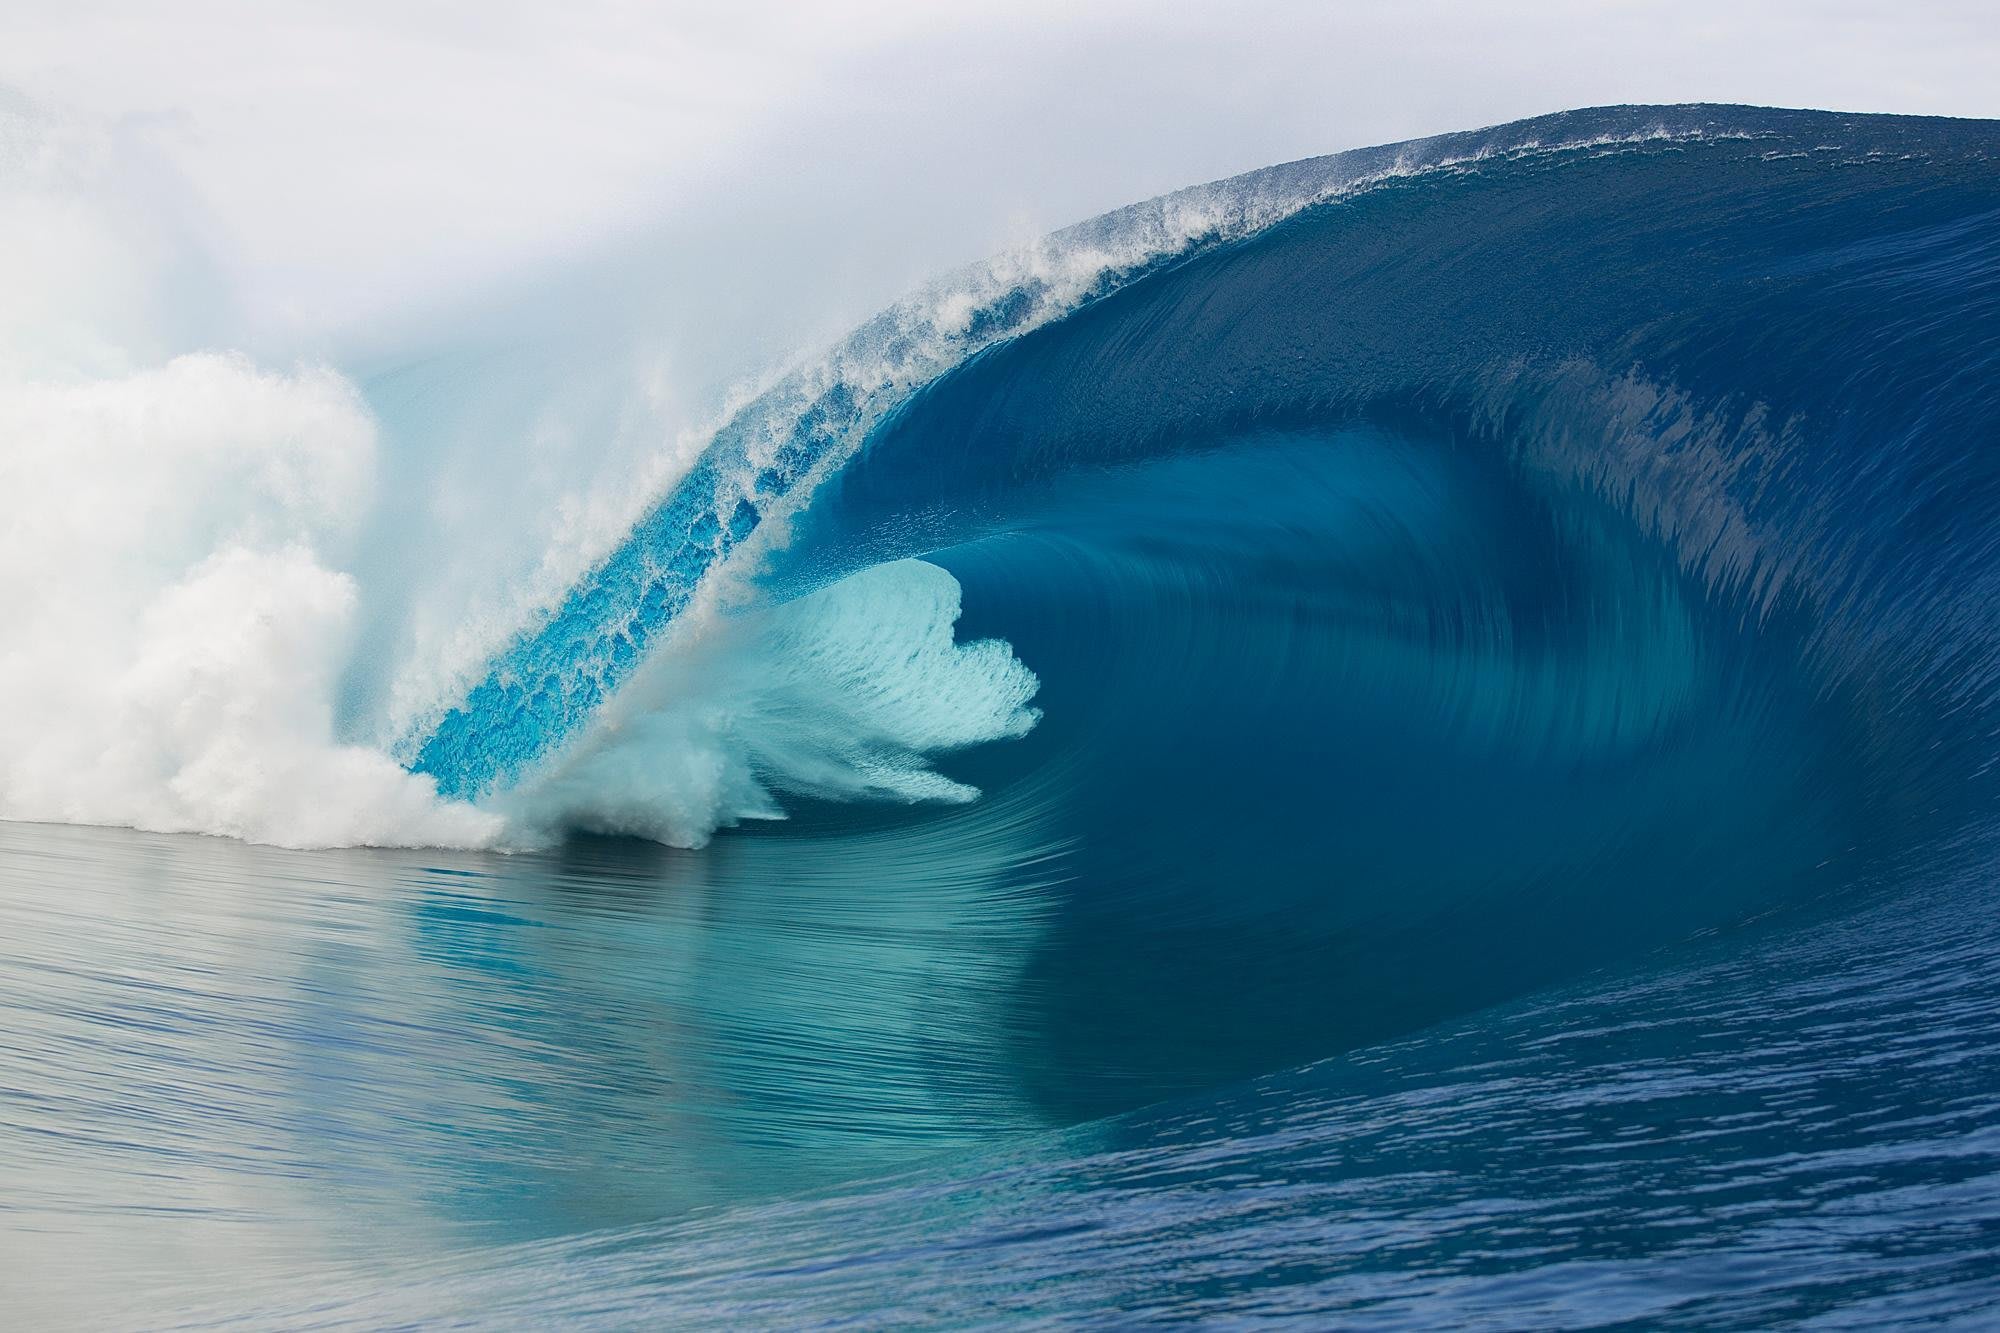 Teahupo'o: histoire de la vague la plus célèbre du surf